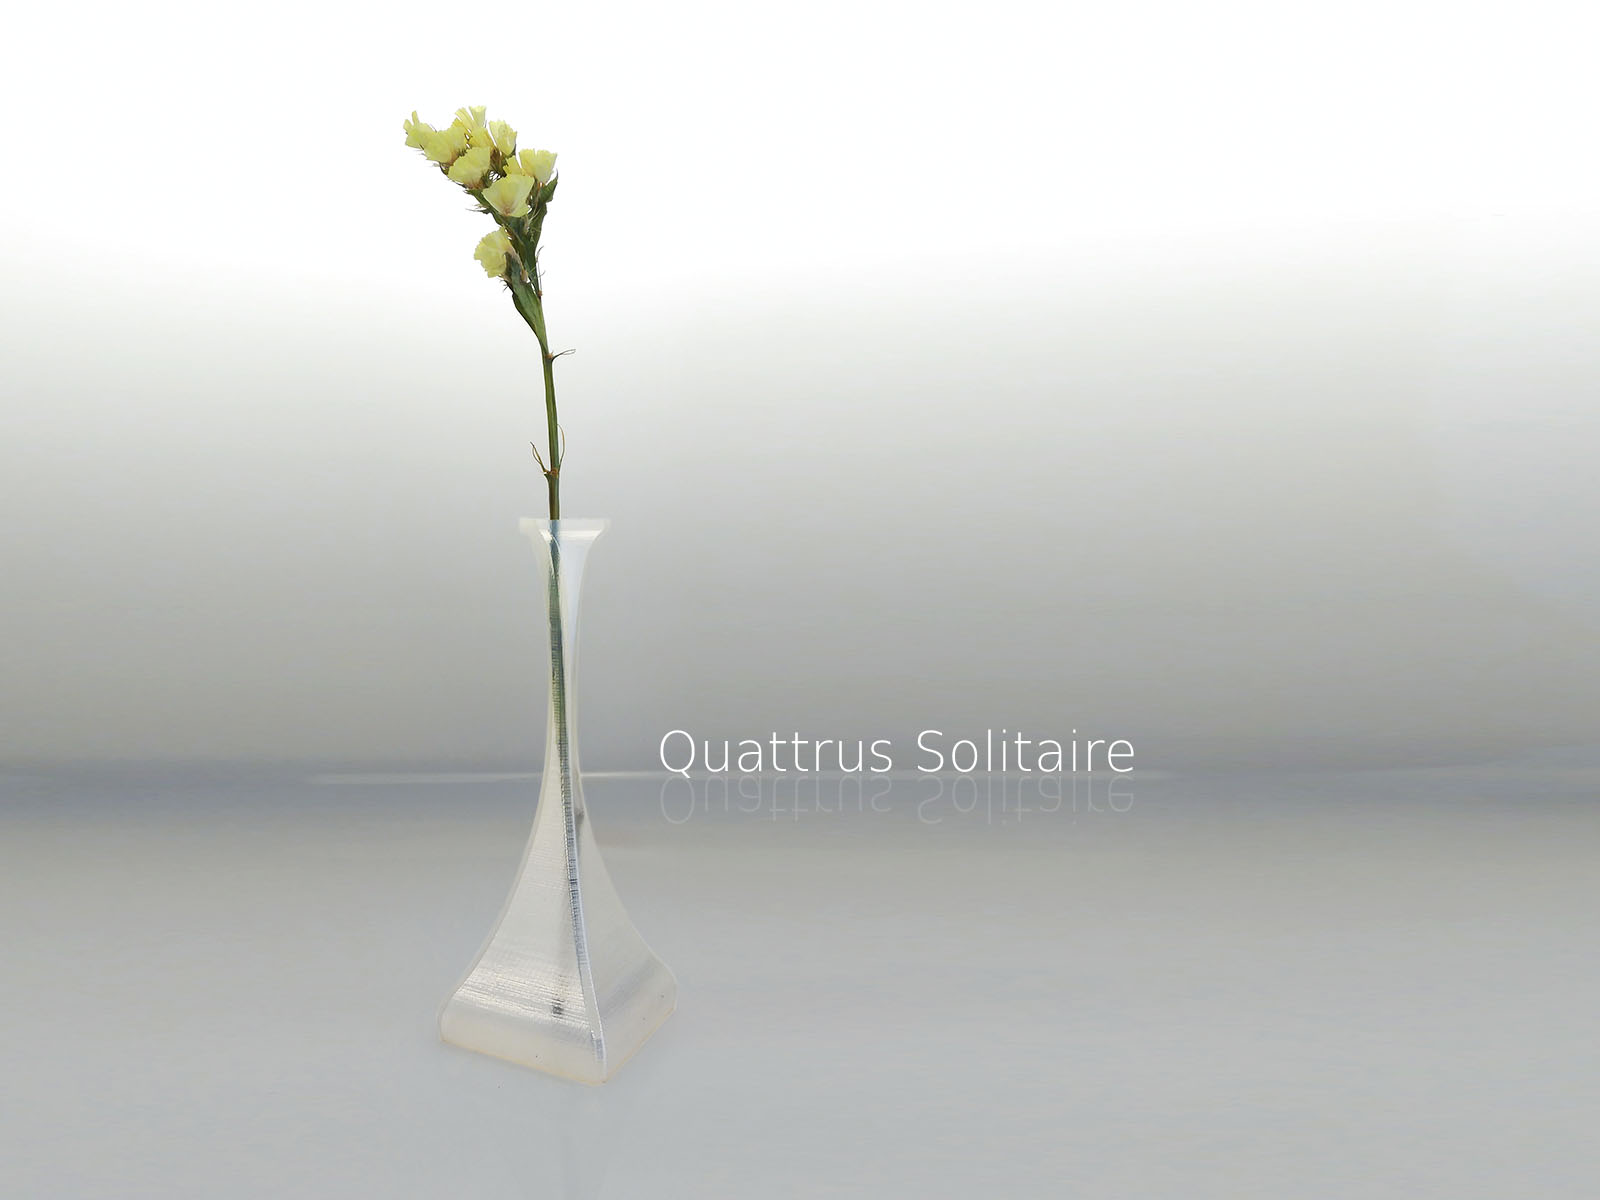 Quattrus Solitaire